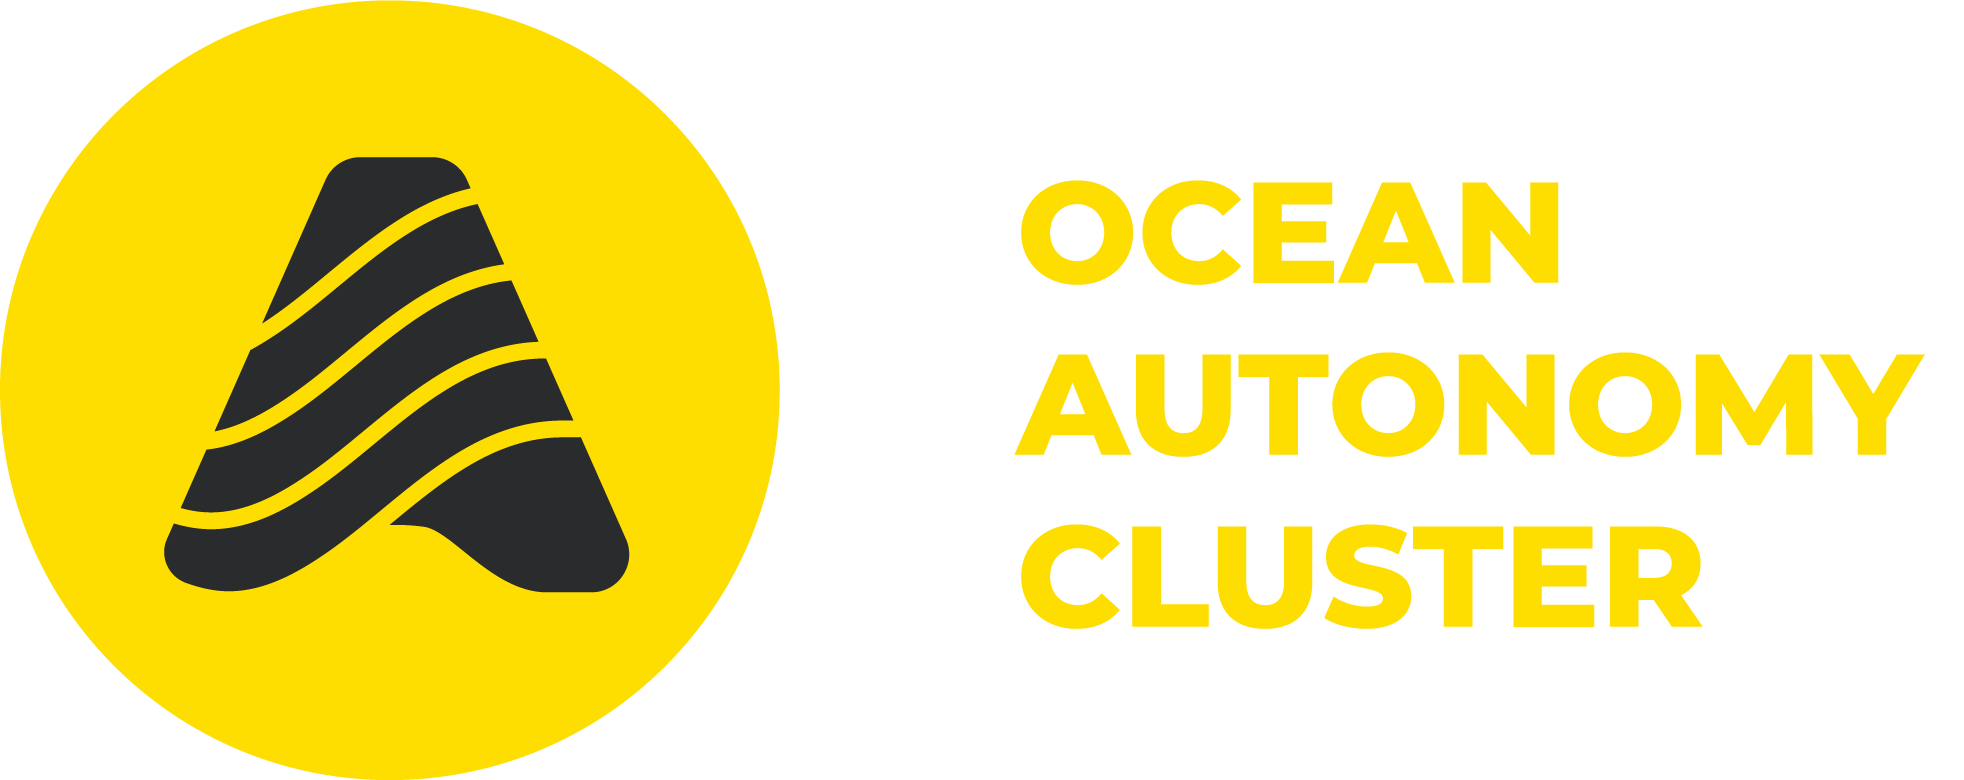 Ocean Autonomy Cluster